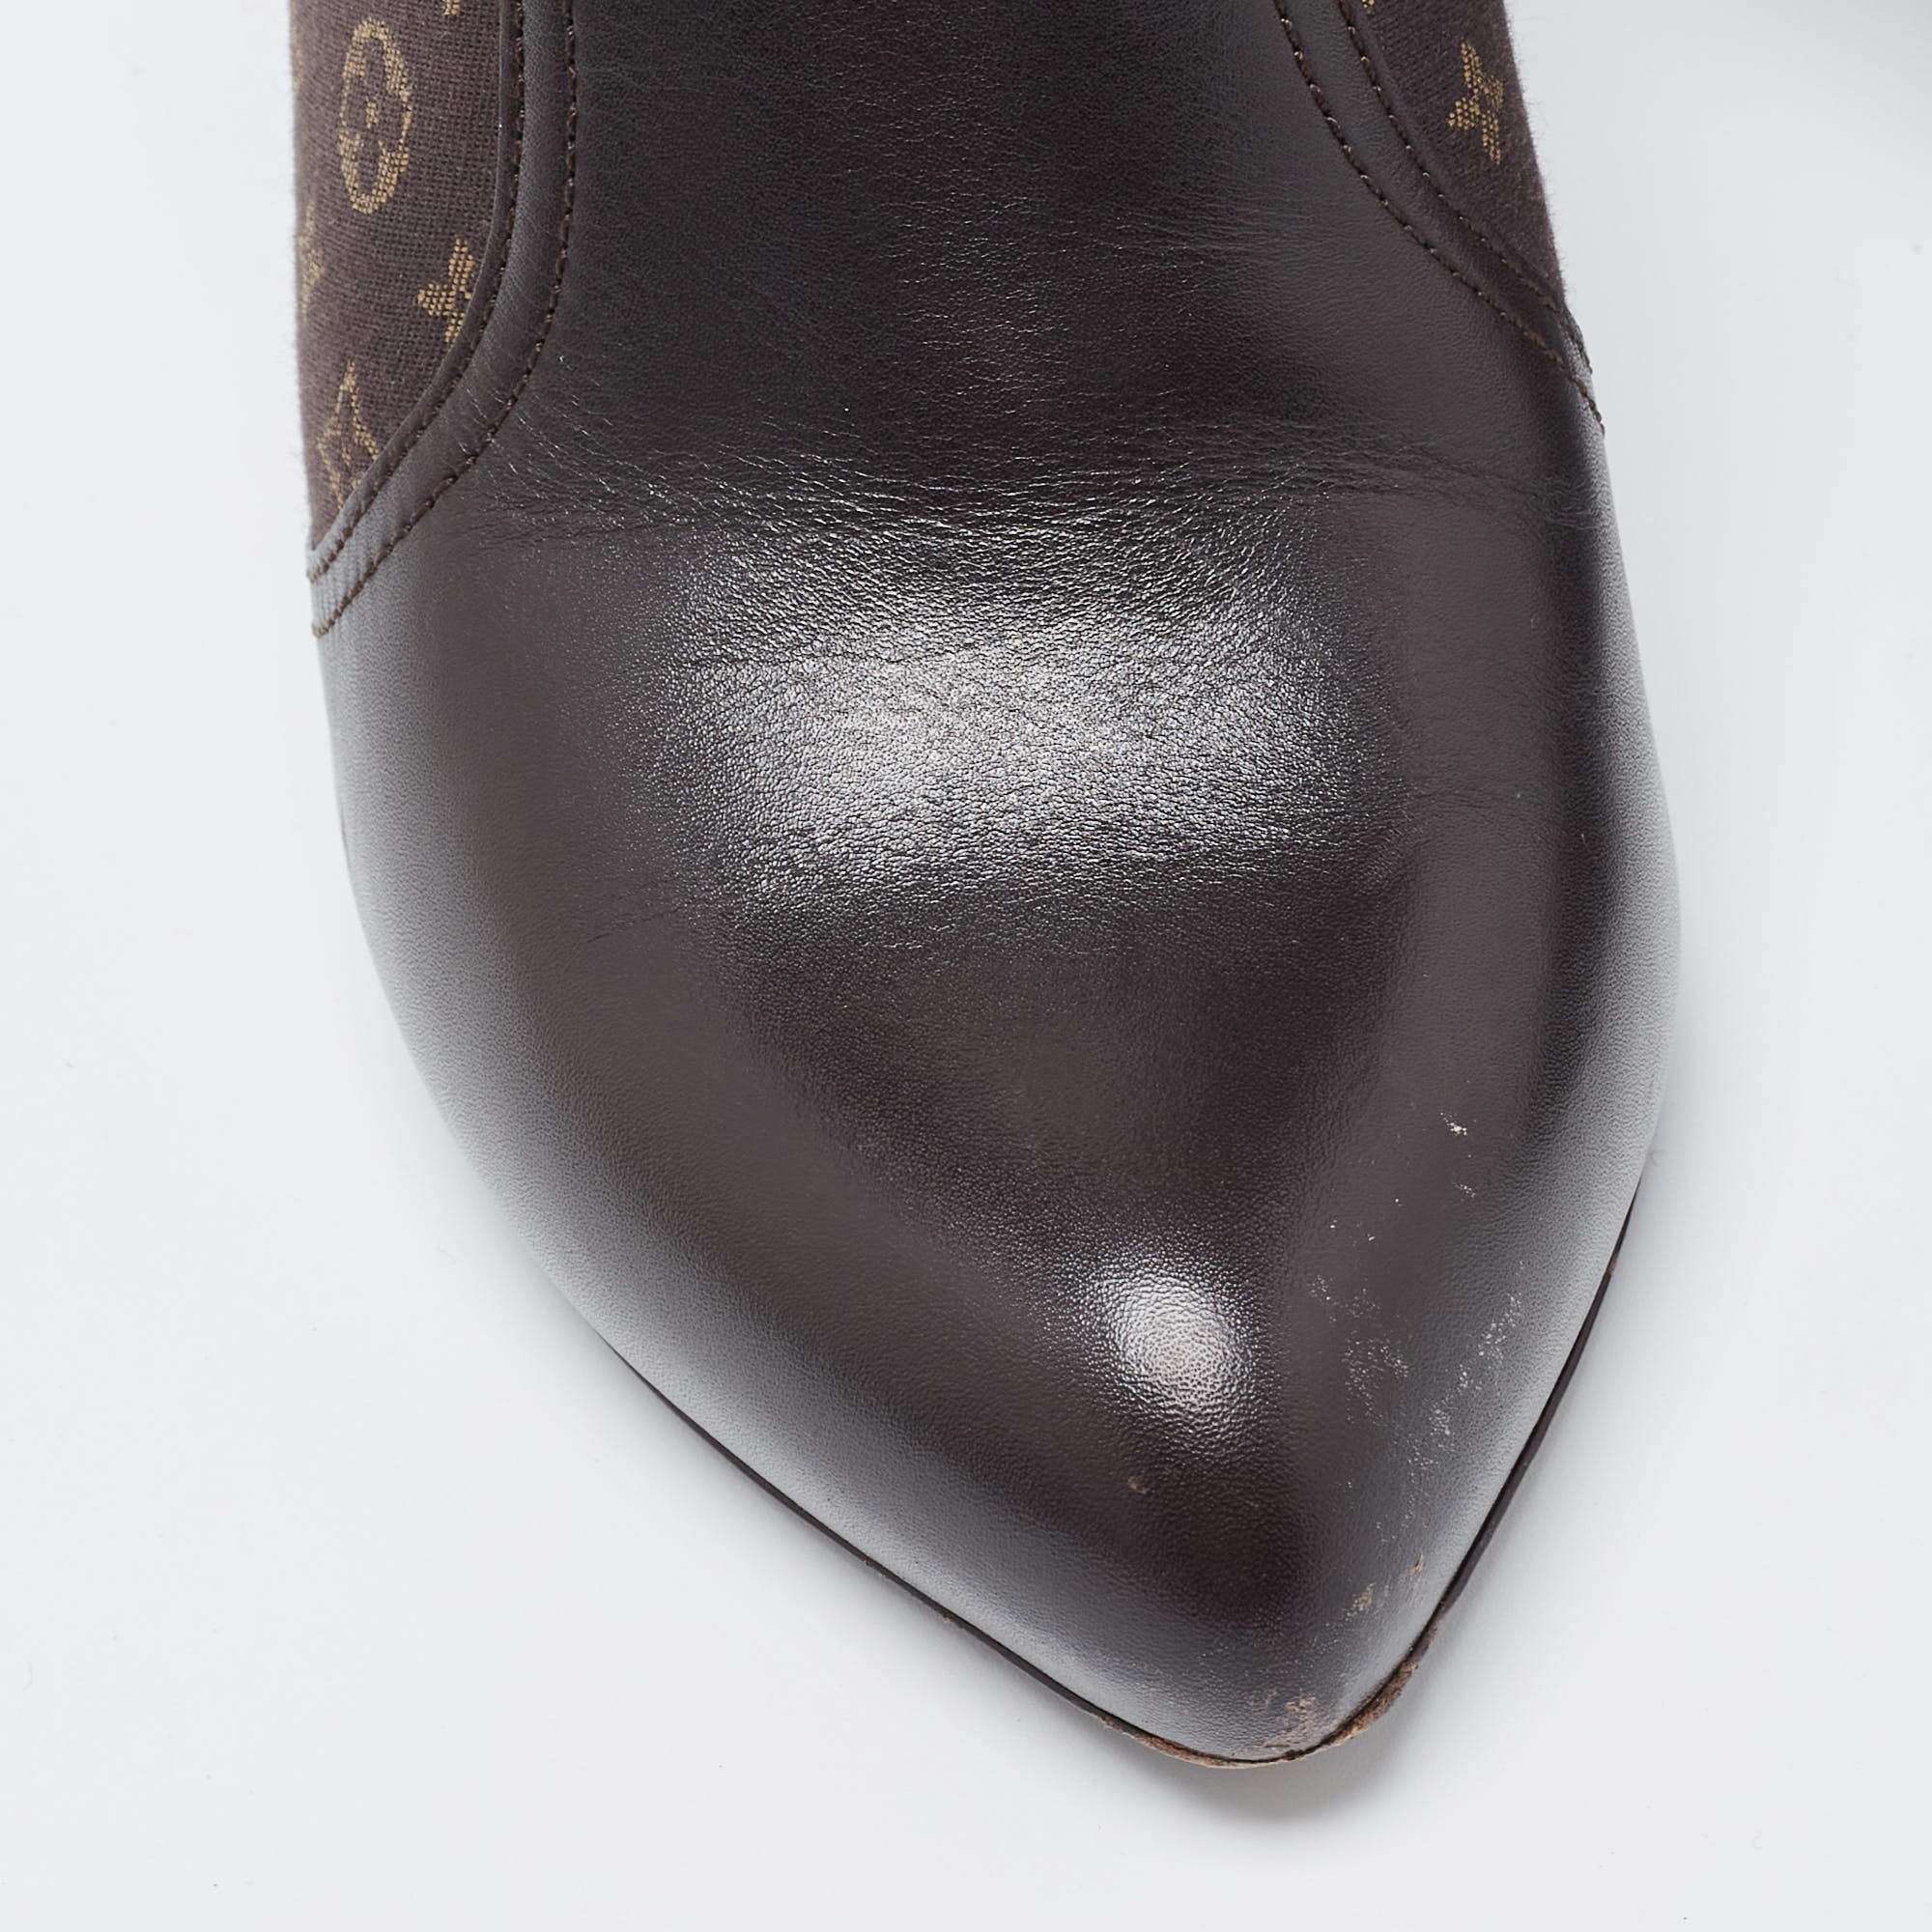 Louis Vuitton Brown Leather Platform Ankle Length Boots Size 38 Louis  Vuitton